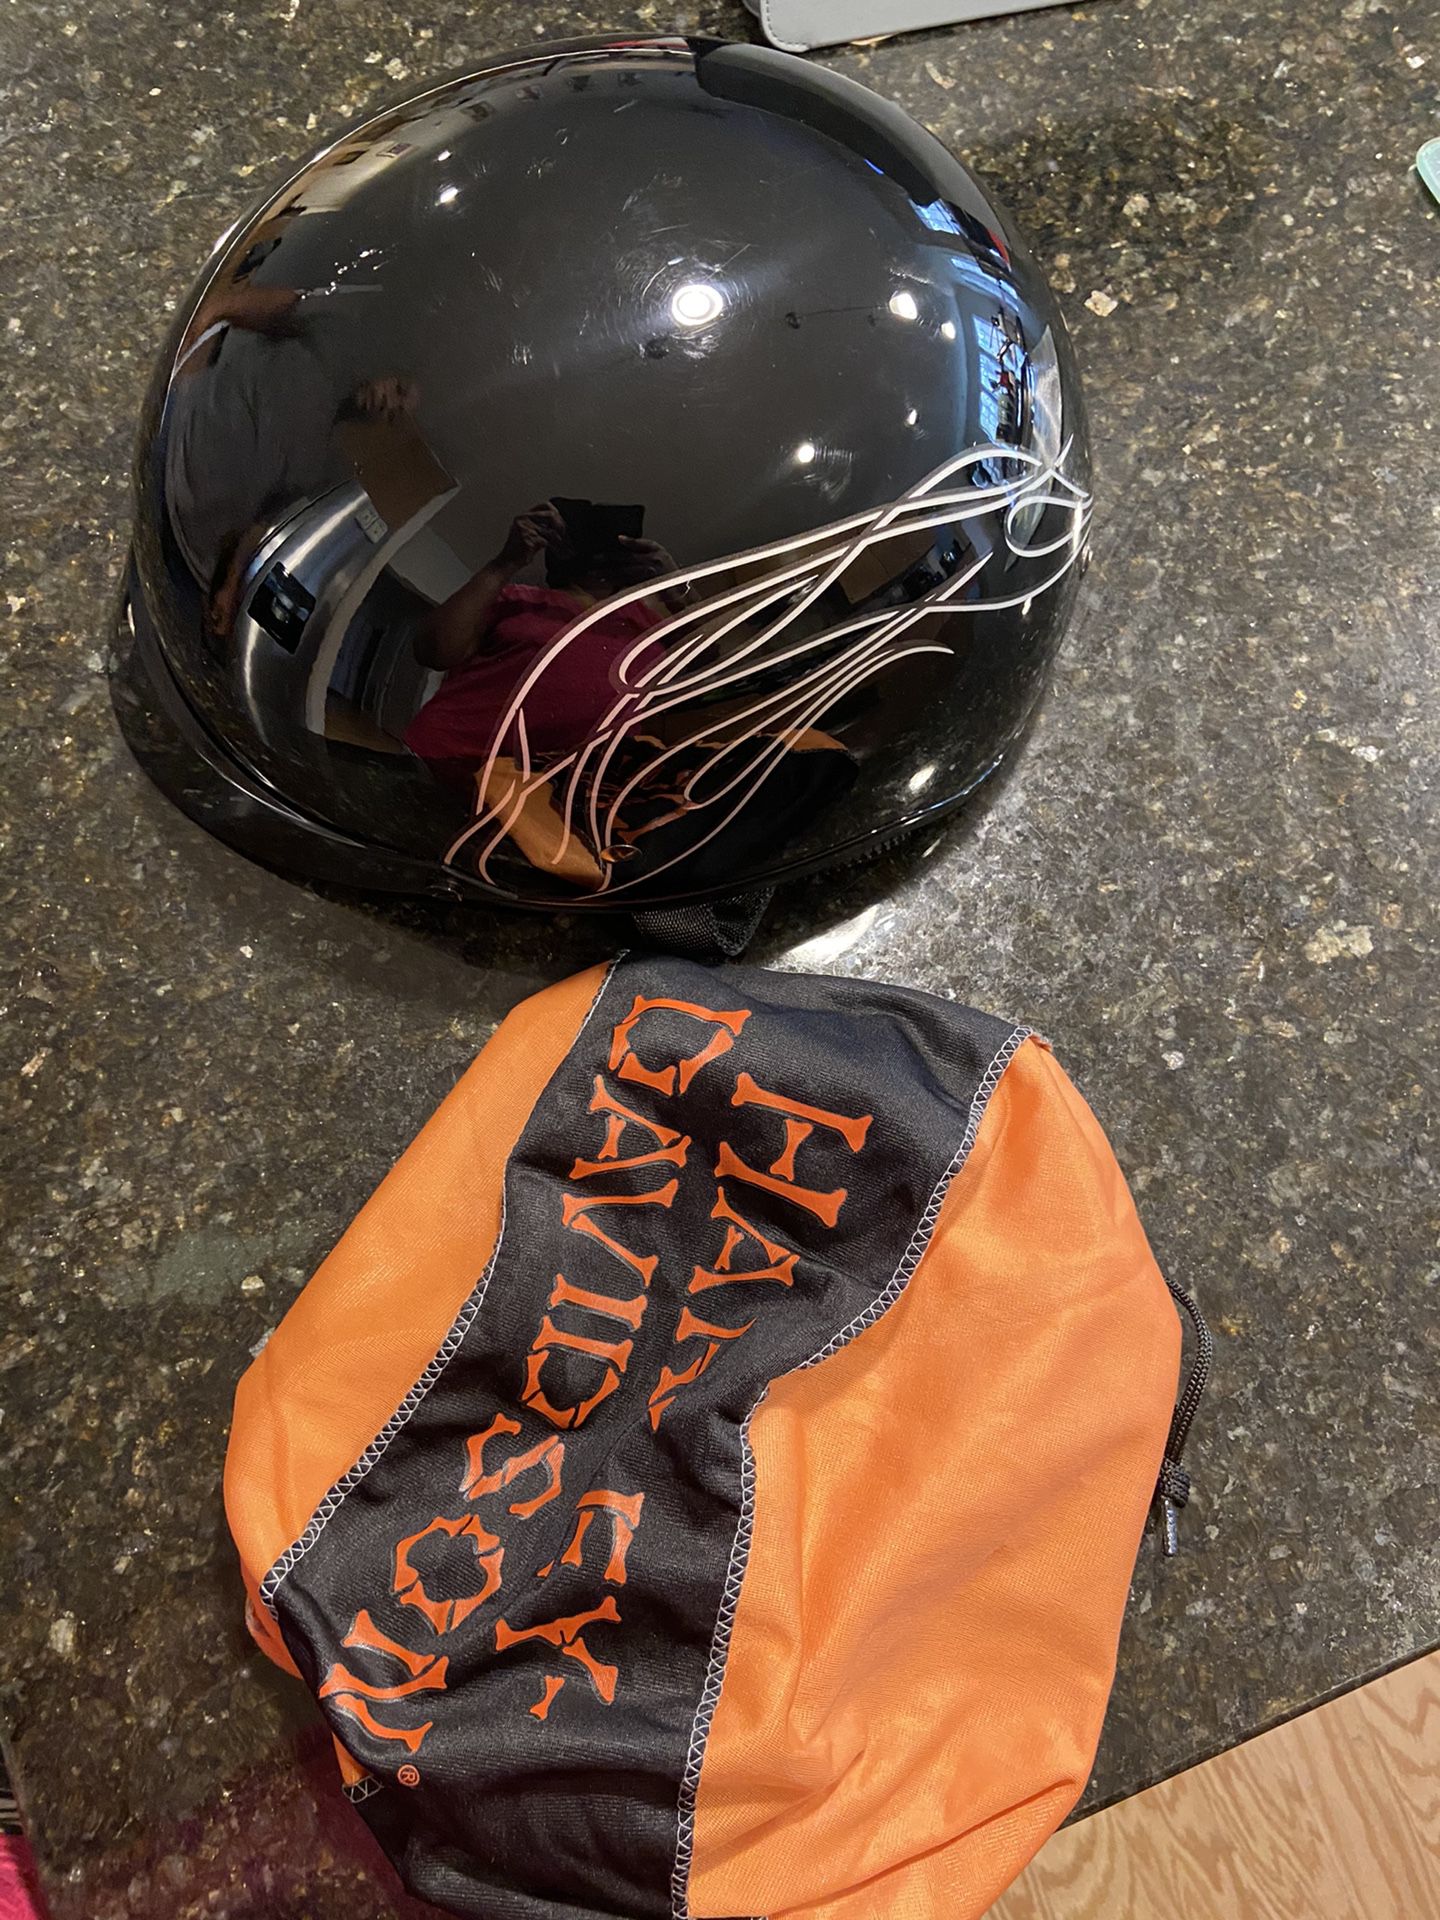 Motorcycle helmet - Harley Davidson